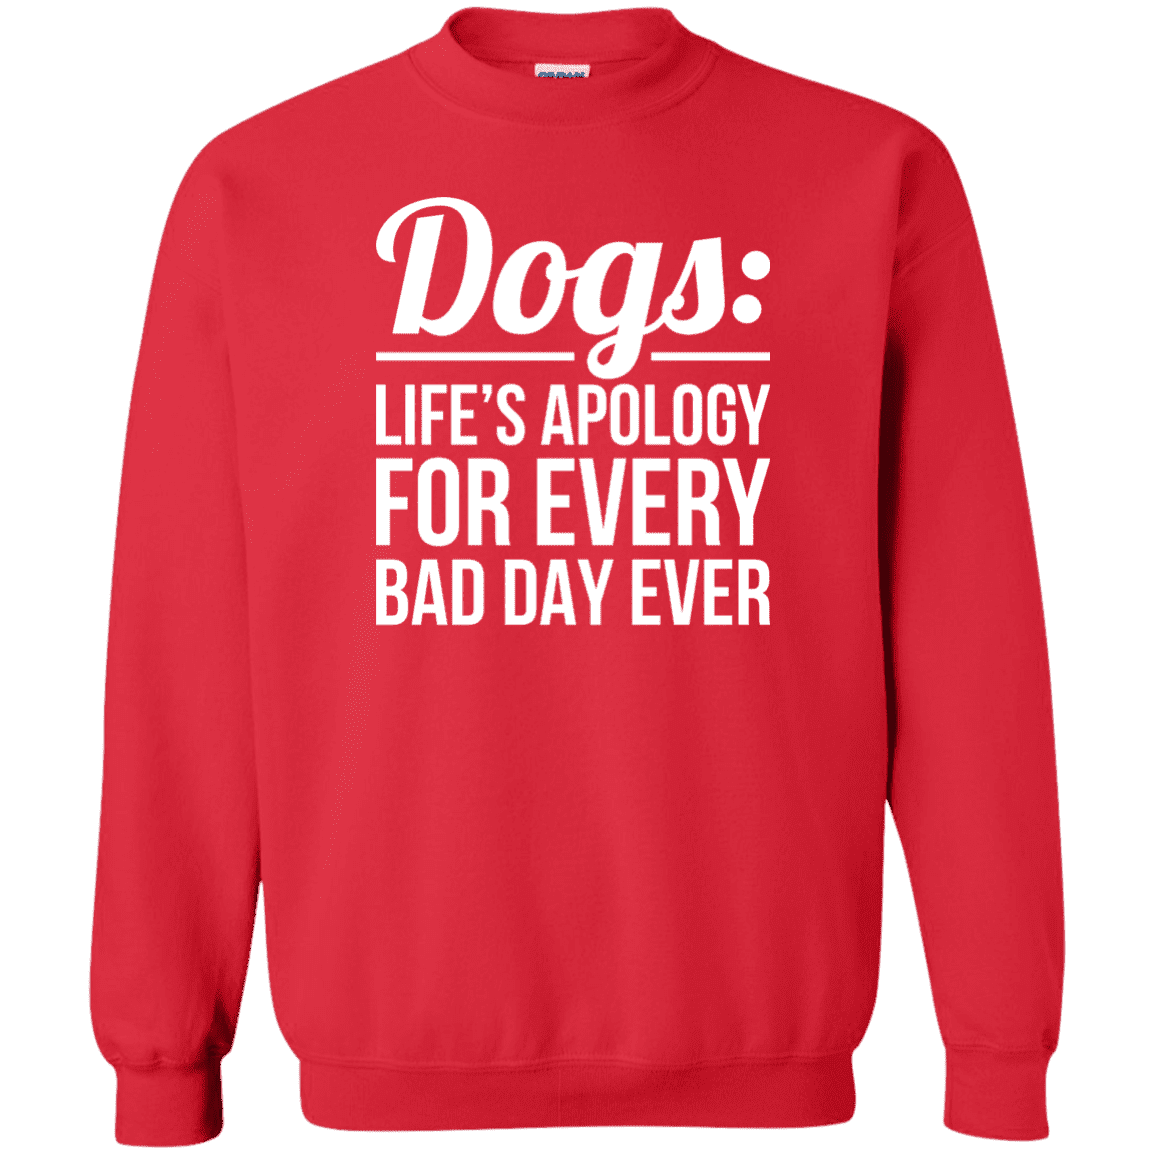 Dogs Life's Apology - Sweatshirt.